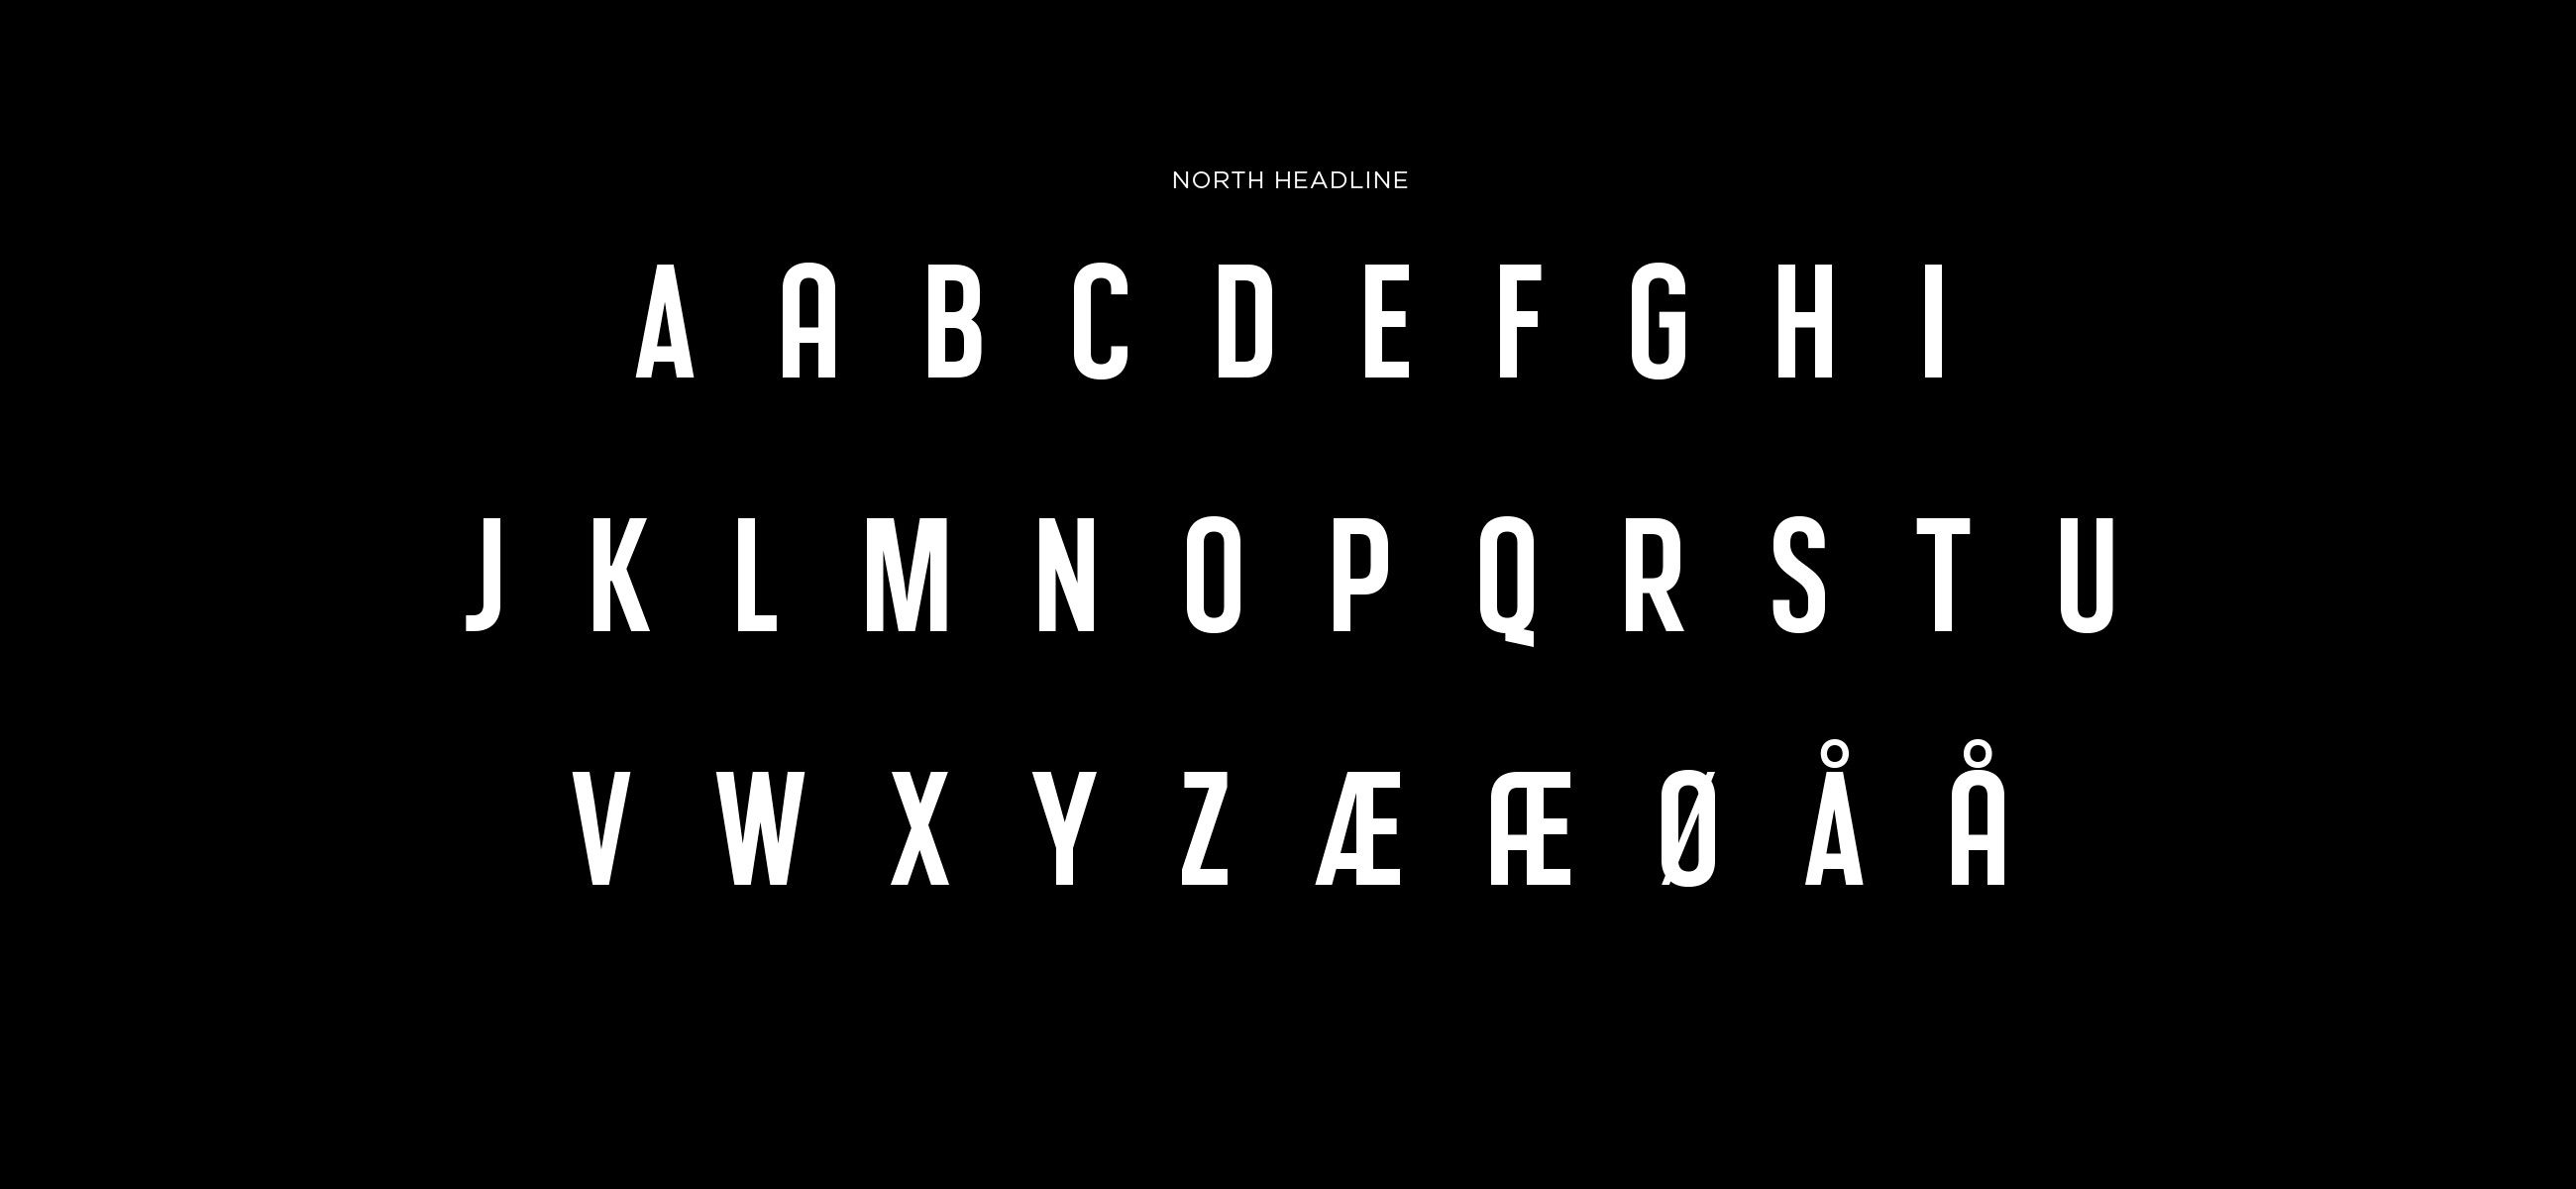 North typeface typography typografi. Visuell identitet Visual identity.